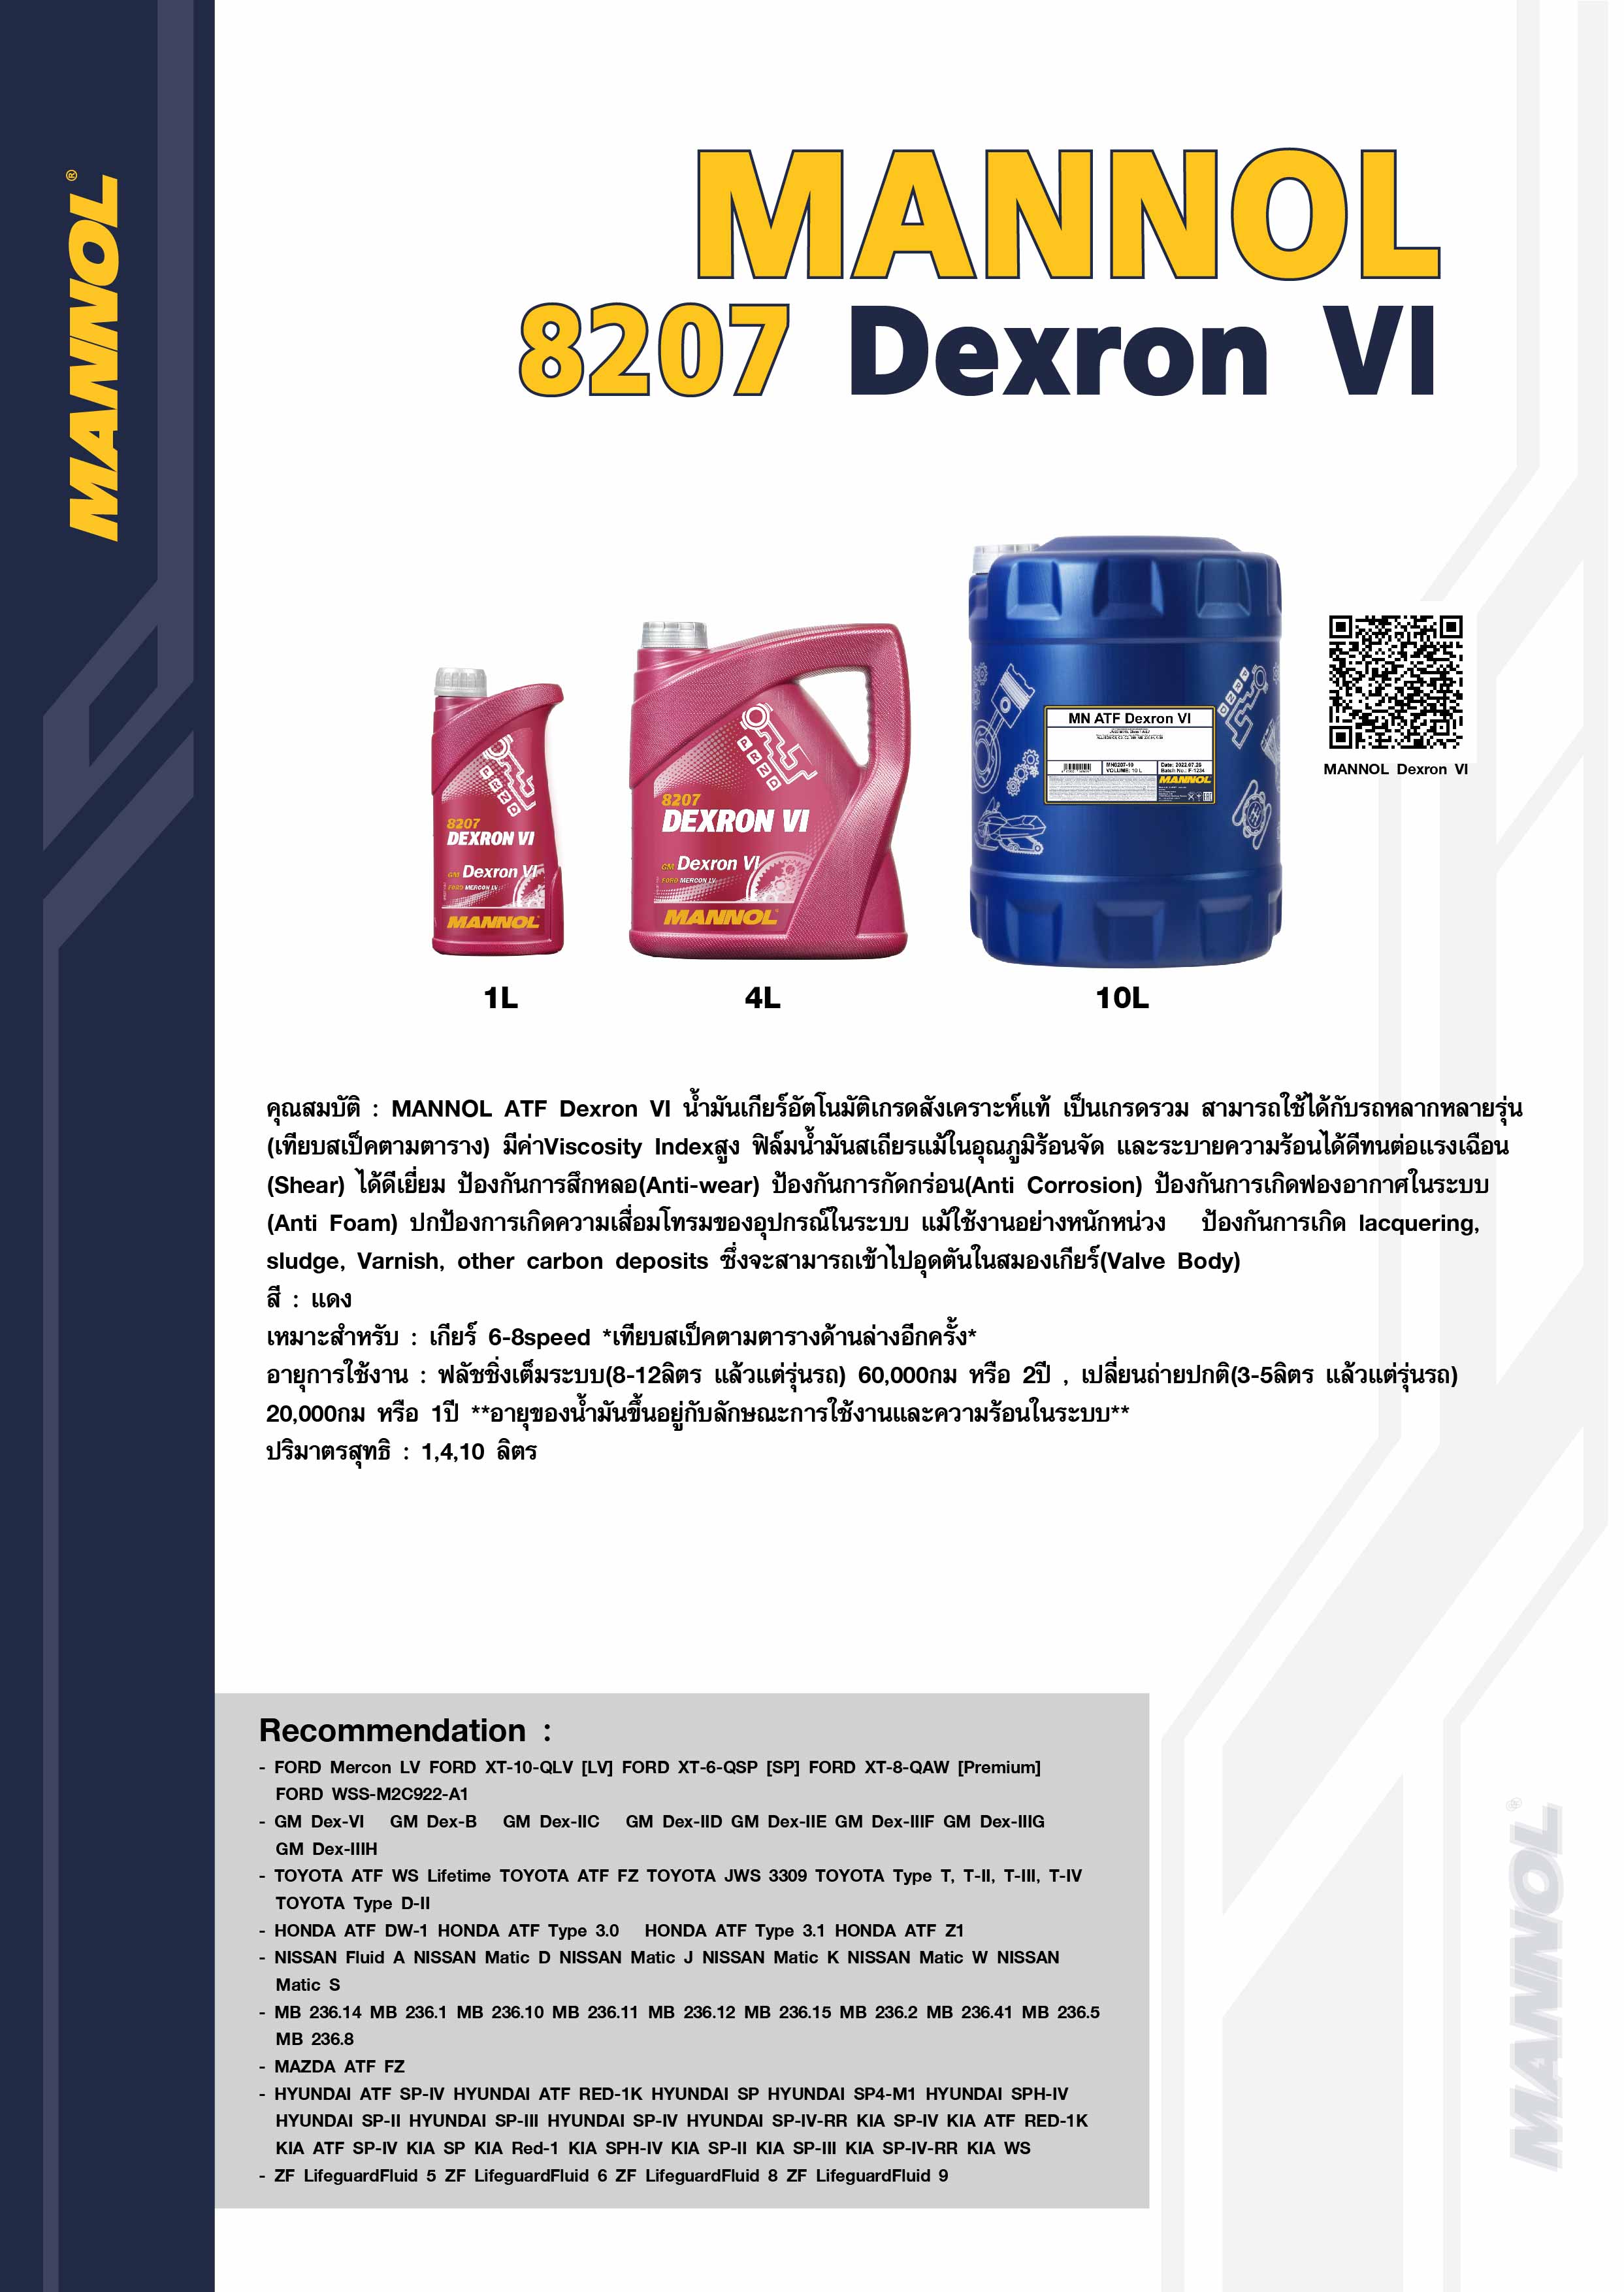 8207 Dexron VI